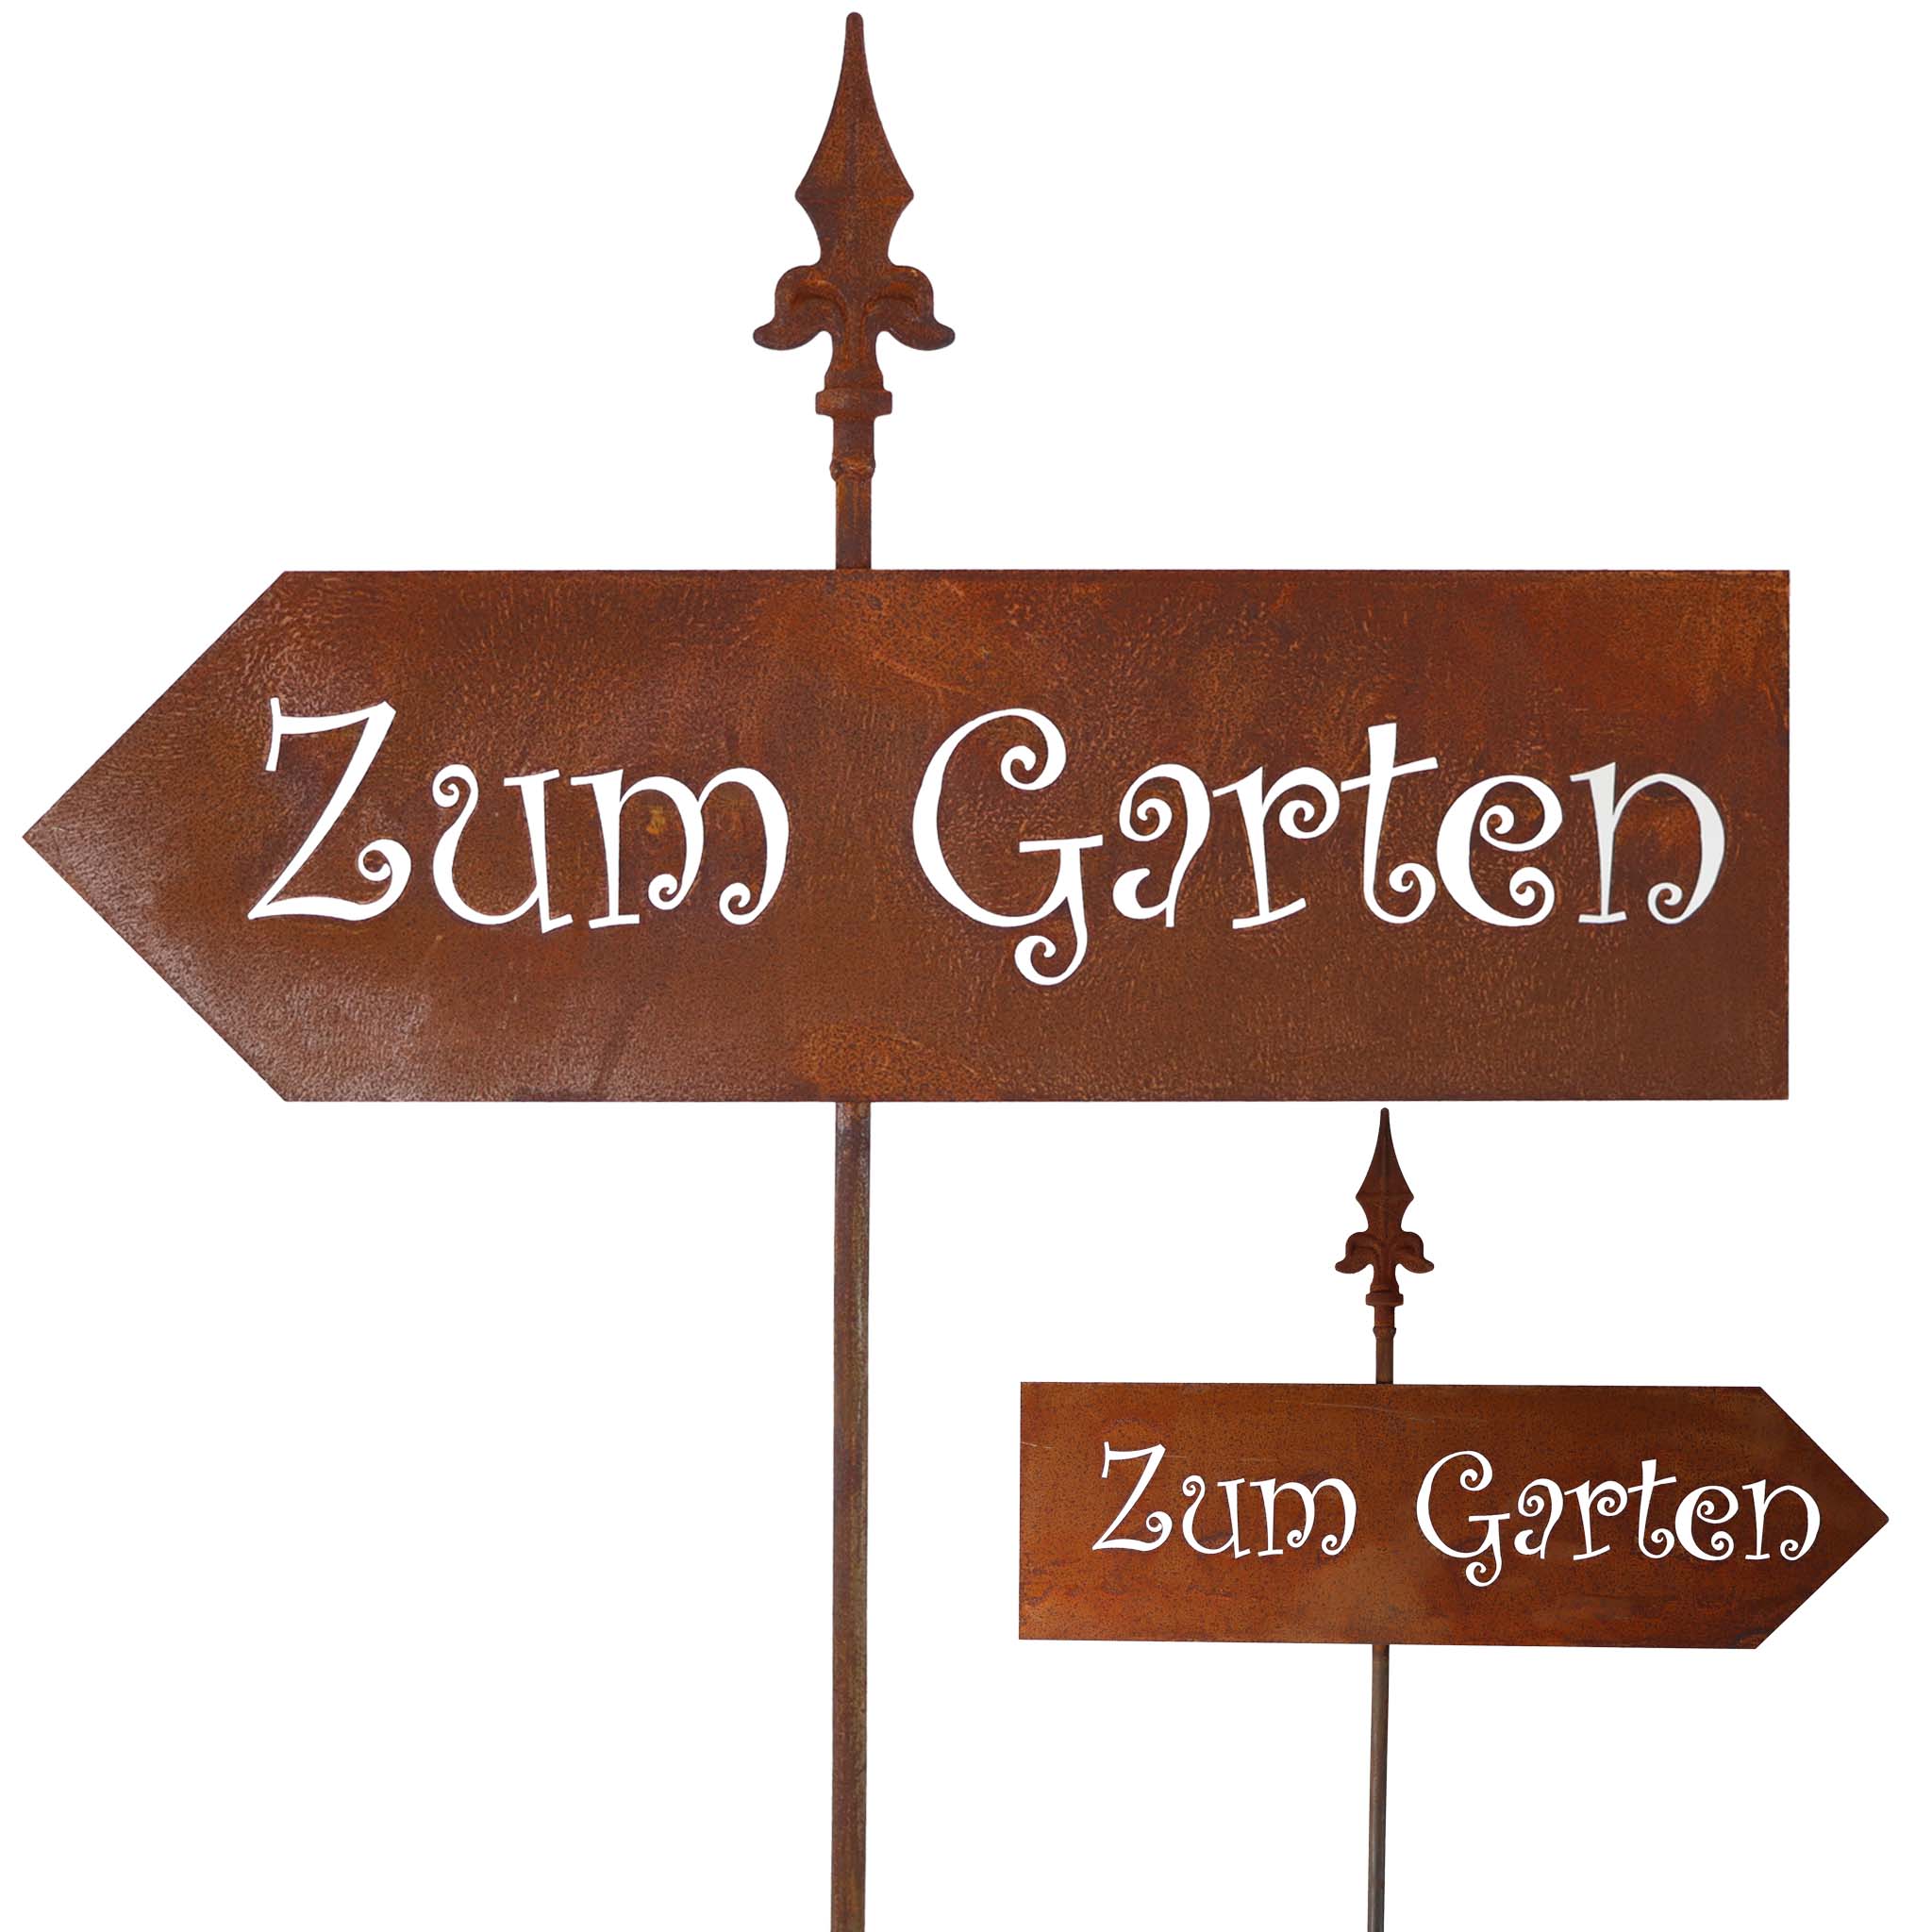 Rostiger Metall-Gartenstecker 'Zum Garten', einzigartiges Edelrost-Finish, handgefertigt, 170 cm Höhe, perfektes Geschenk